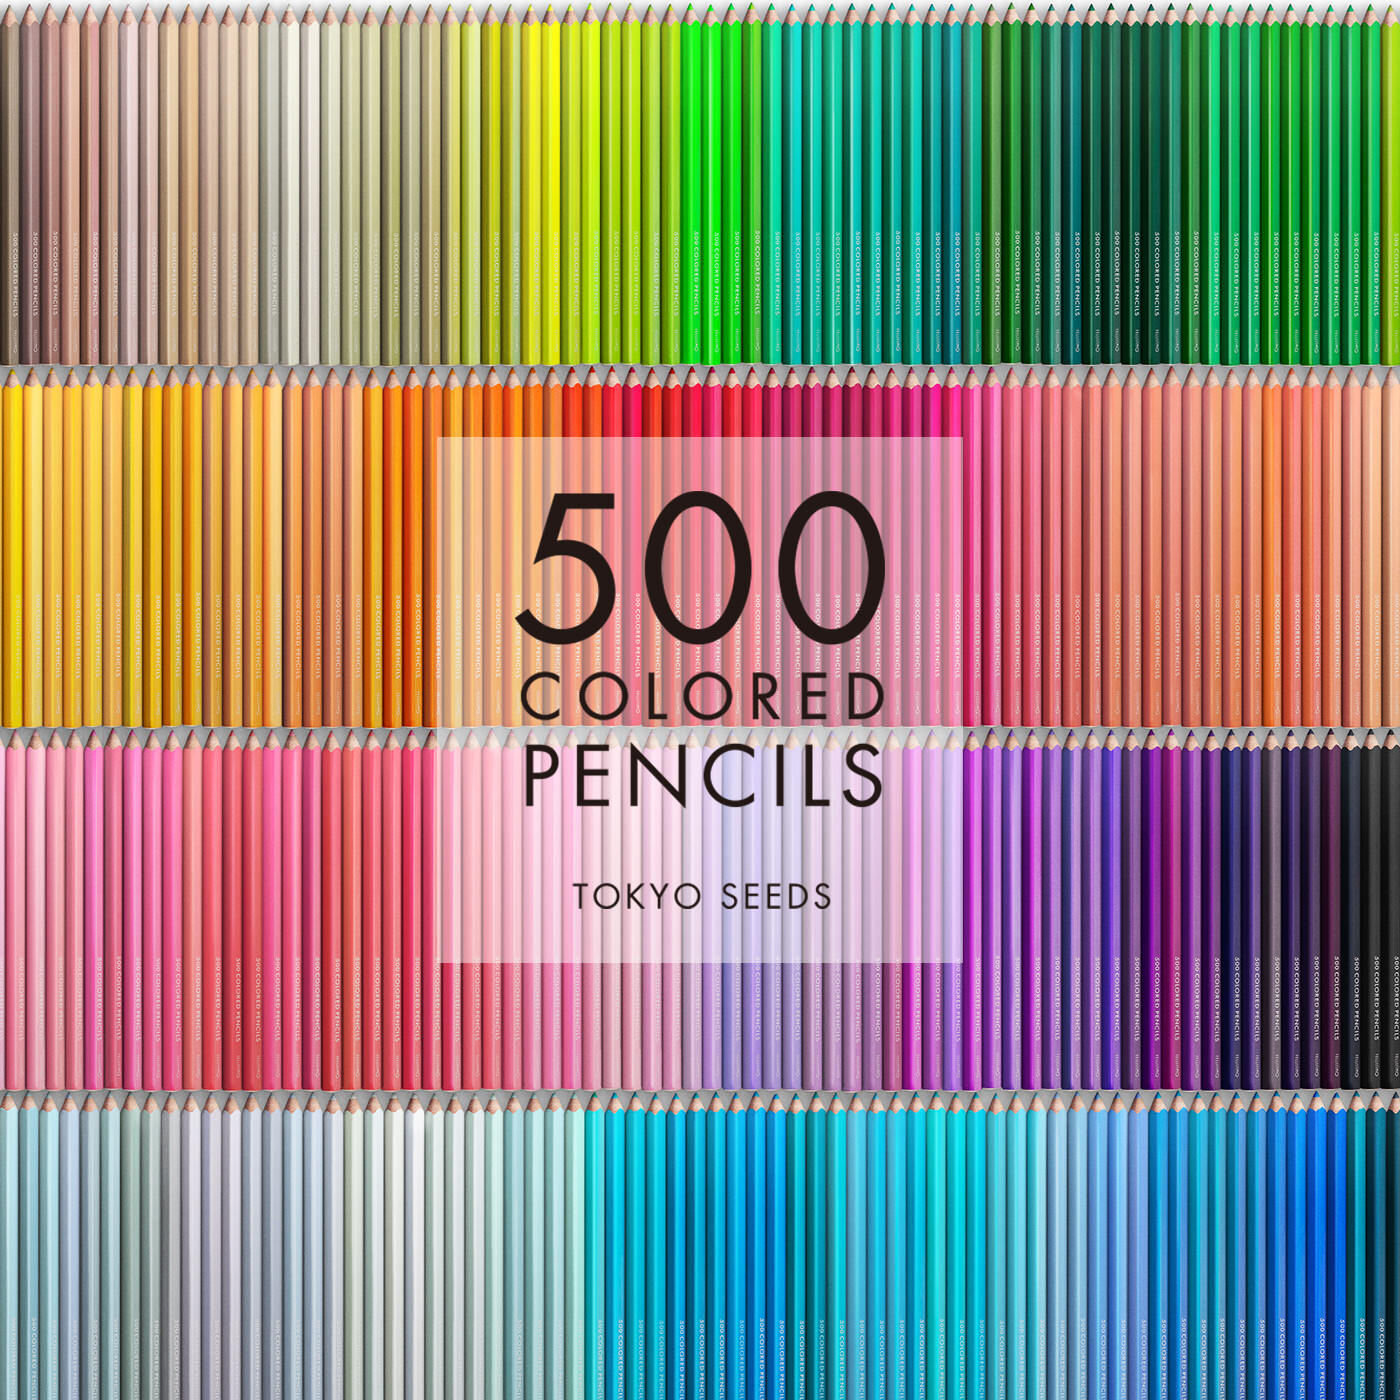 Real Stock|【233/500 GOLDEN KIWI】500色の色えんぴつ TOKYO SEEDS|1992年、世界初の「500色」という膨大な色数の色えんぴつが誕生して以来、その販売数は発売当初から合わせると、世界55ヵ国10万セット以上。今回、メイド・イン・ジャパンにこだわり、すべてが新しく生まれ変わって登場しました。